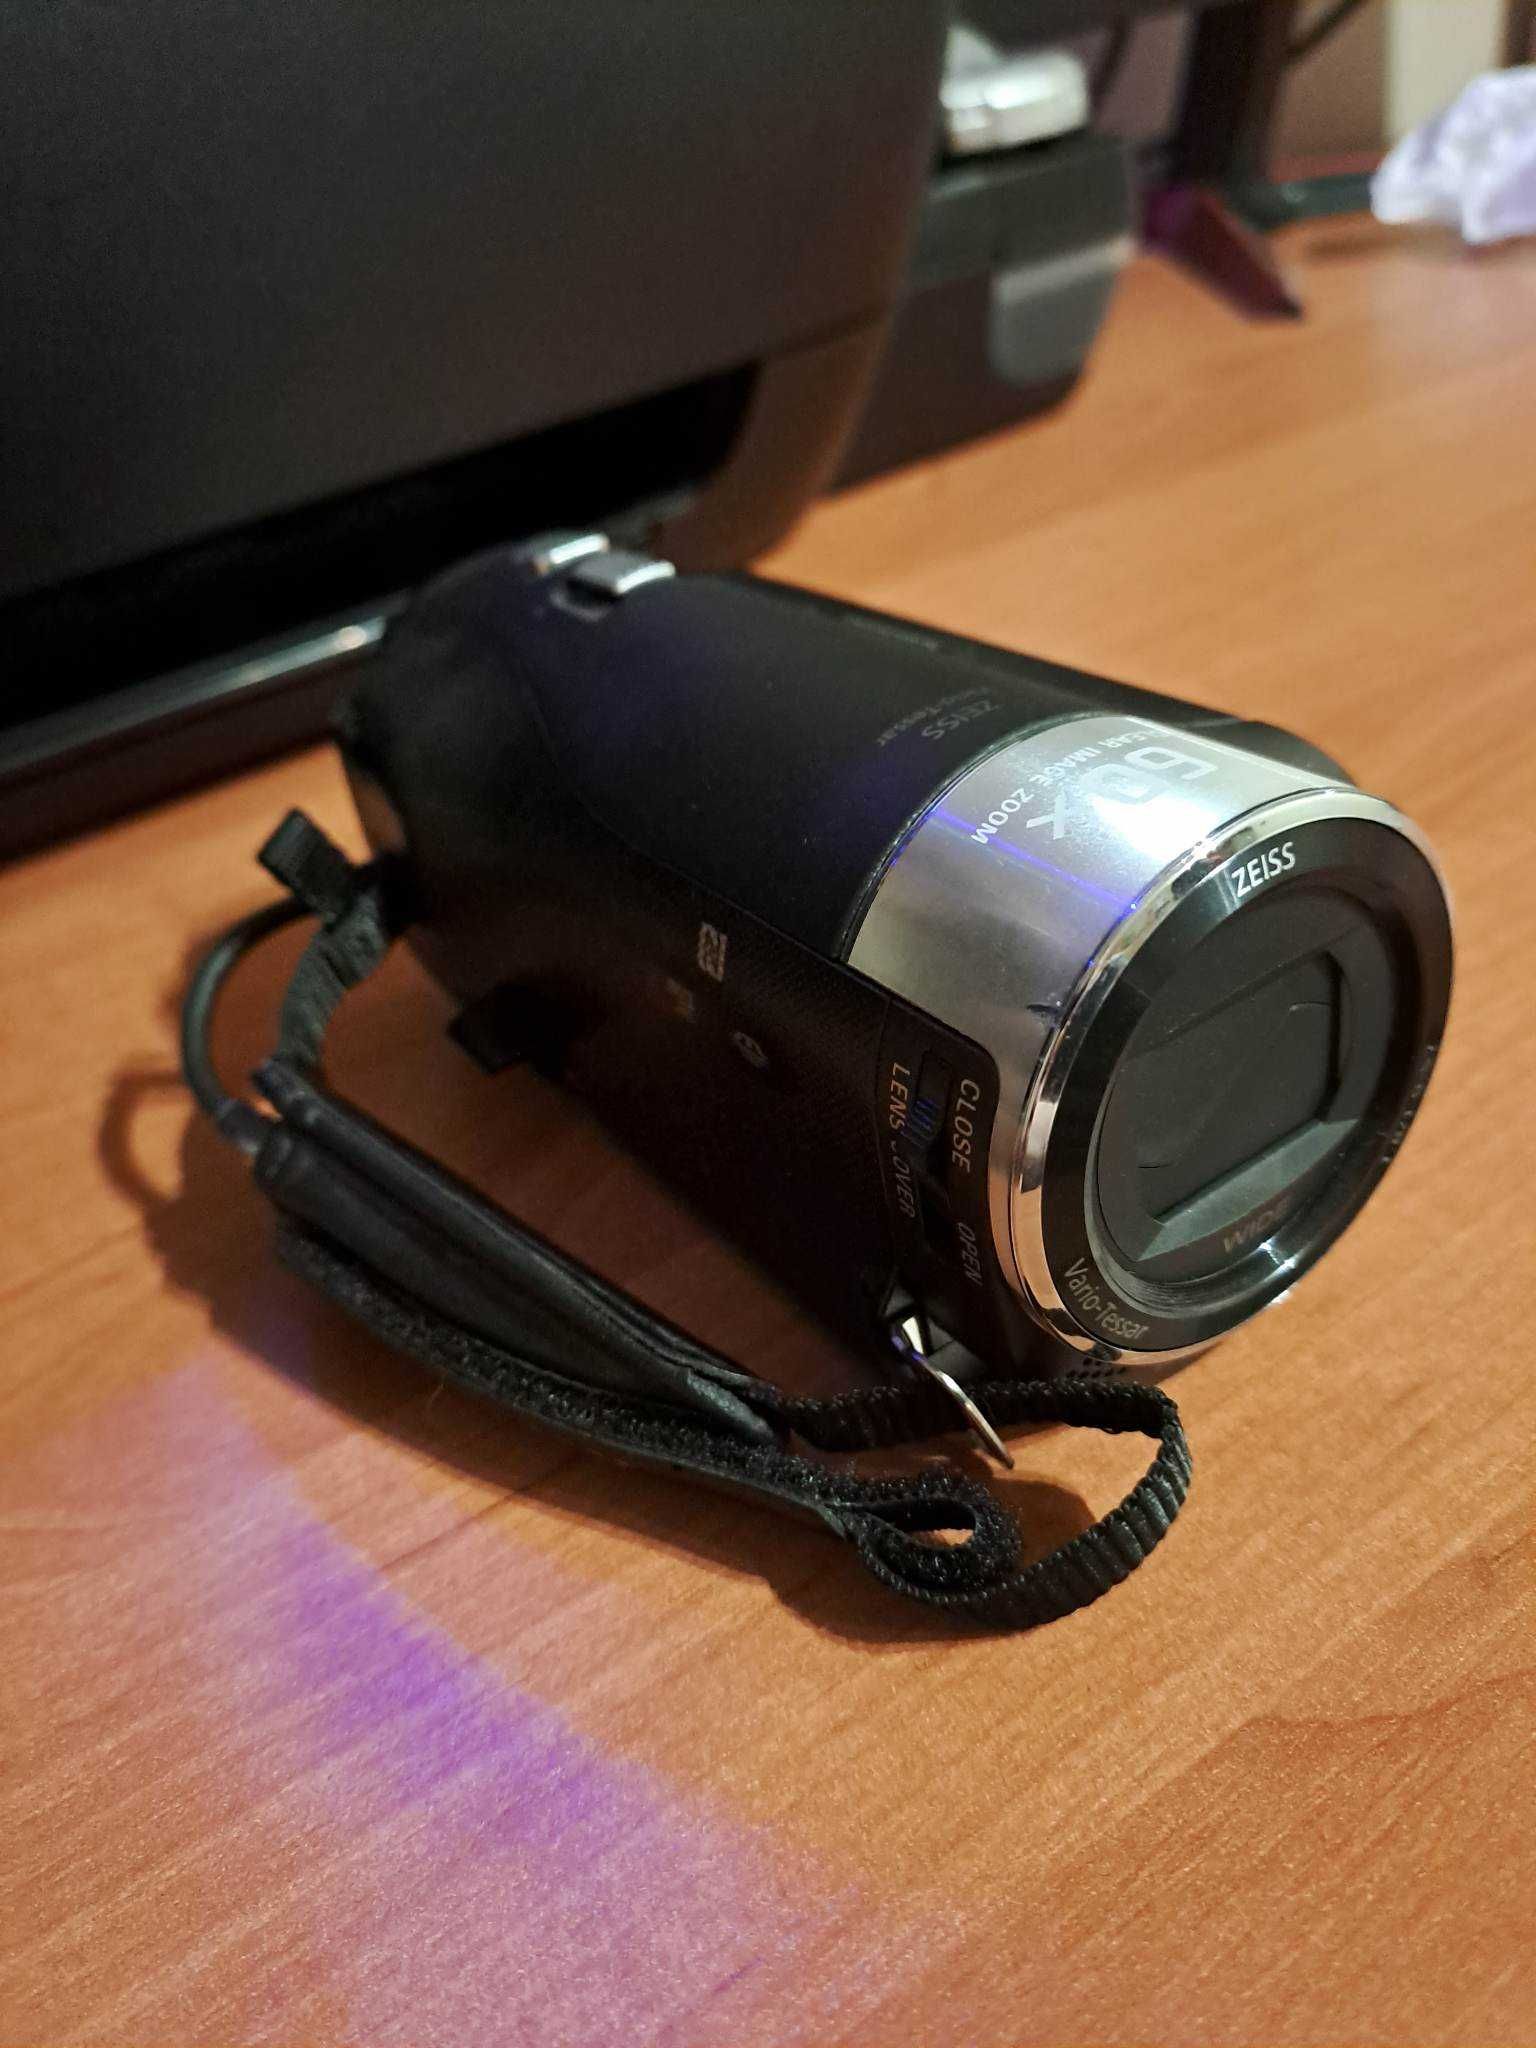 Mini kamera Sony HDR-PJ410 Full HD (1920 x 1080)